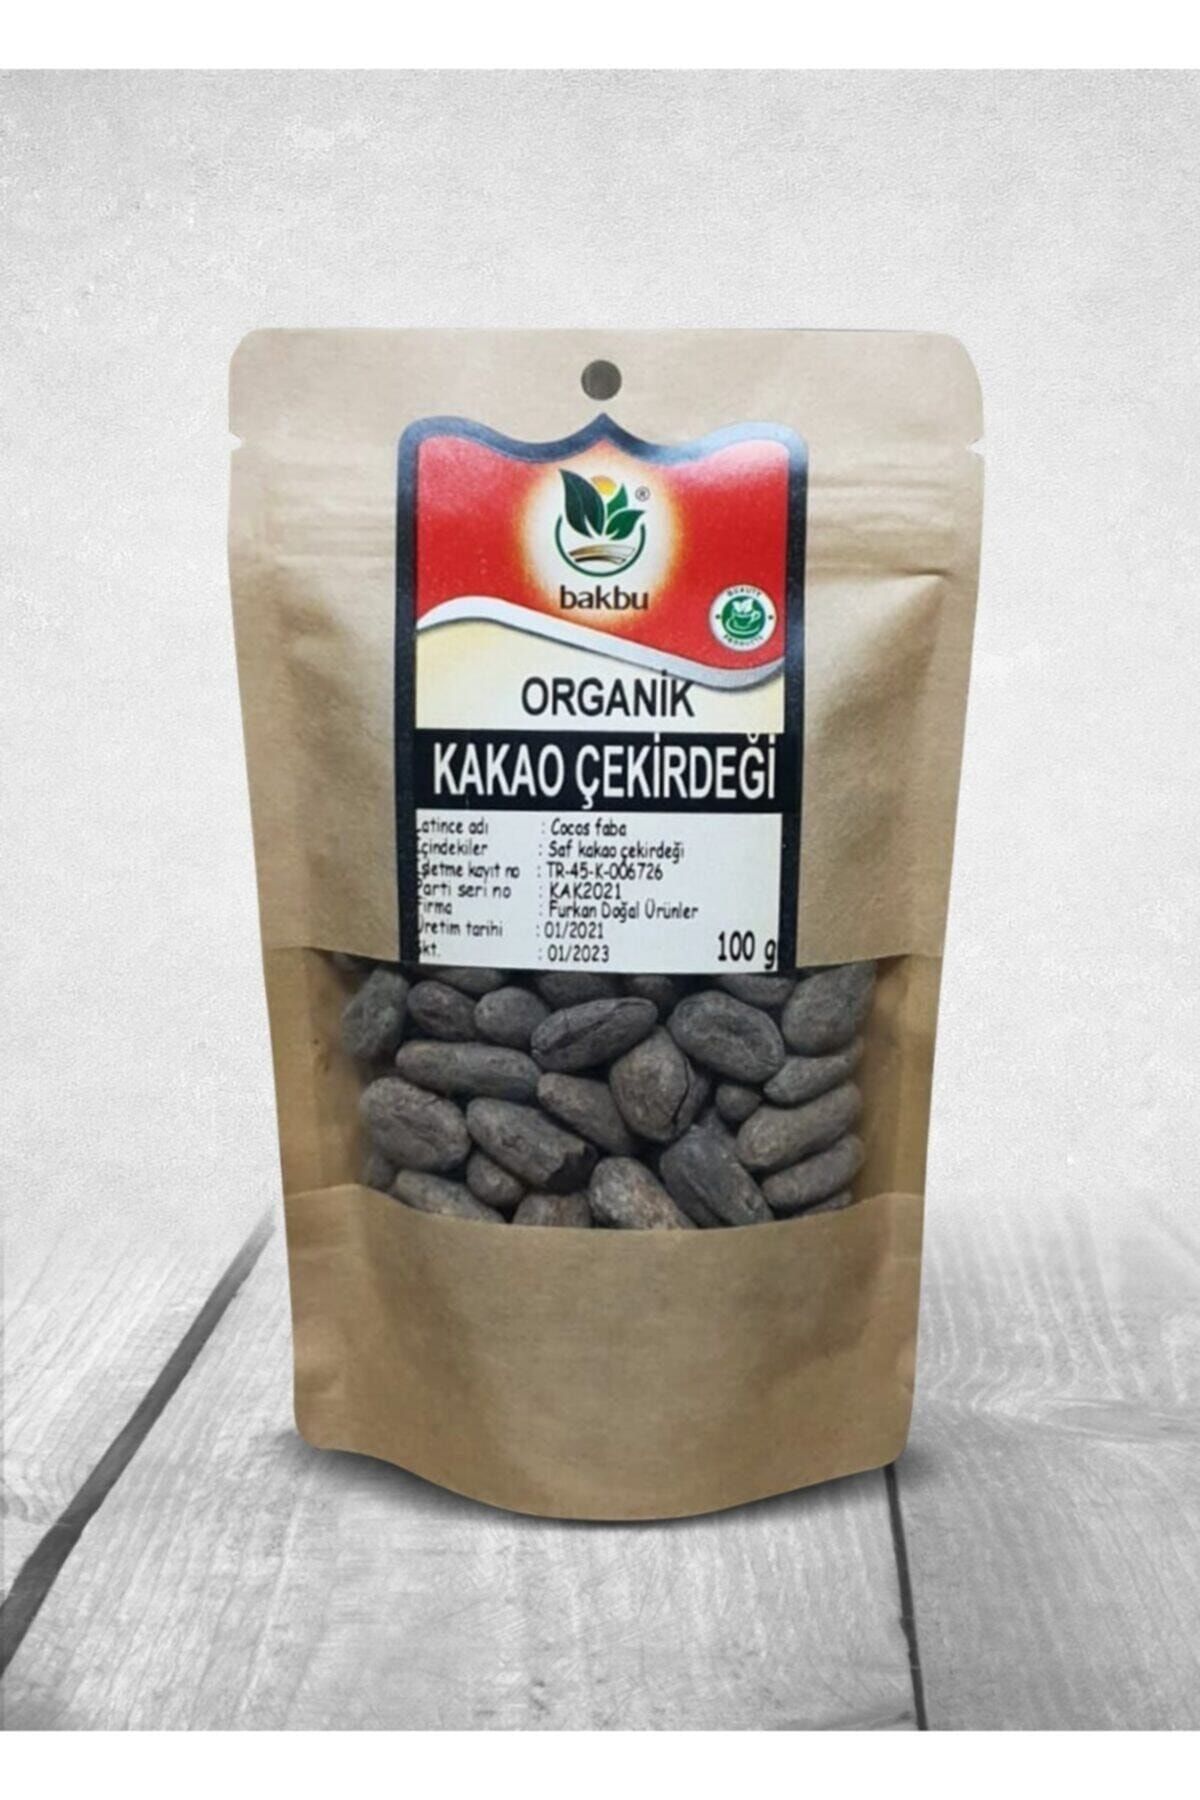 Bakbu Katkısız Organik Kakao Çekirdeği 100 gr